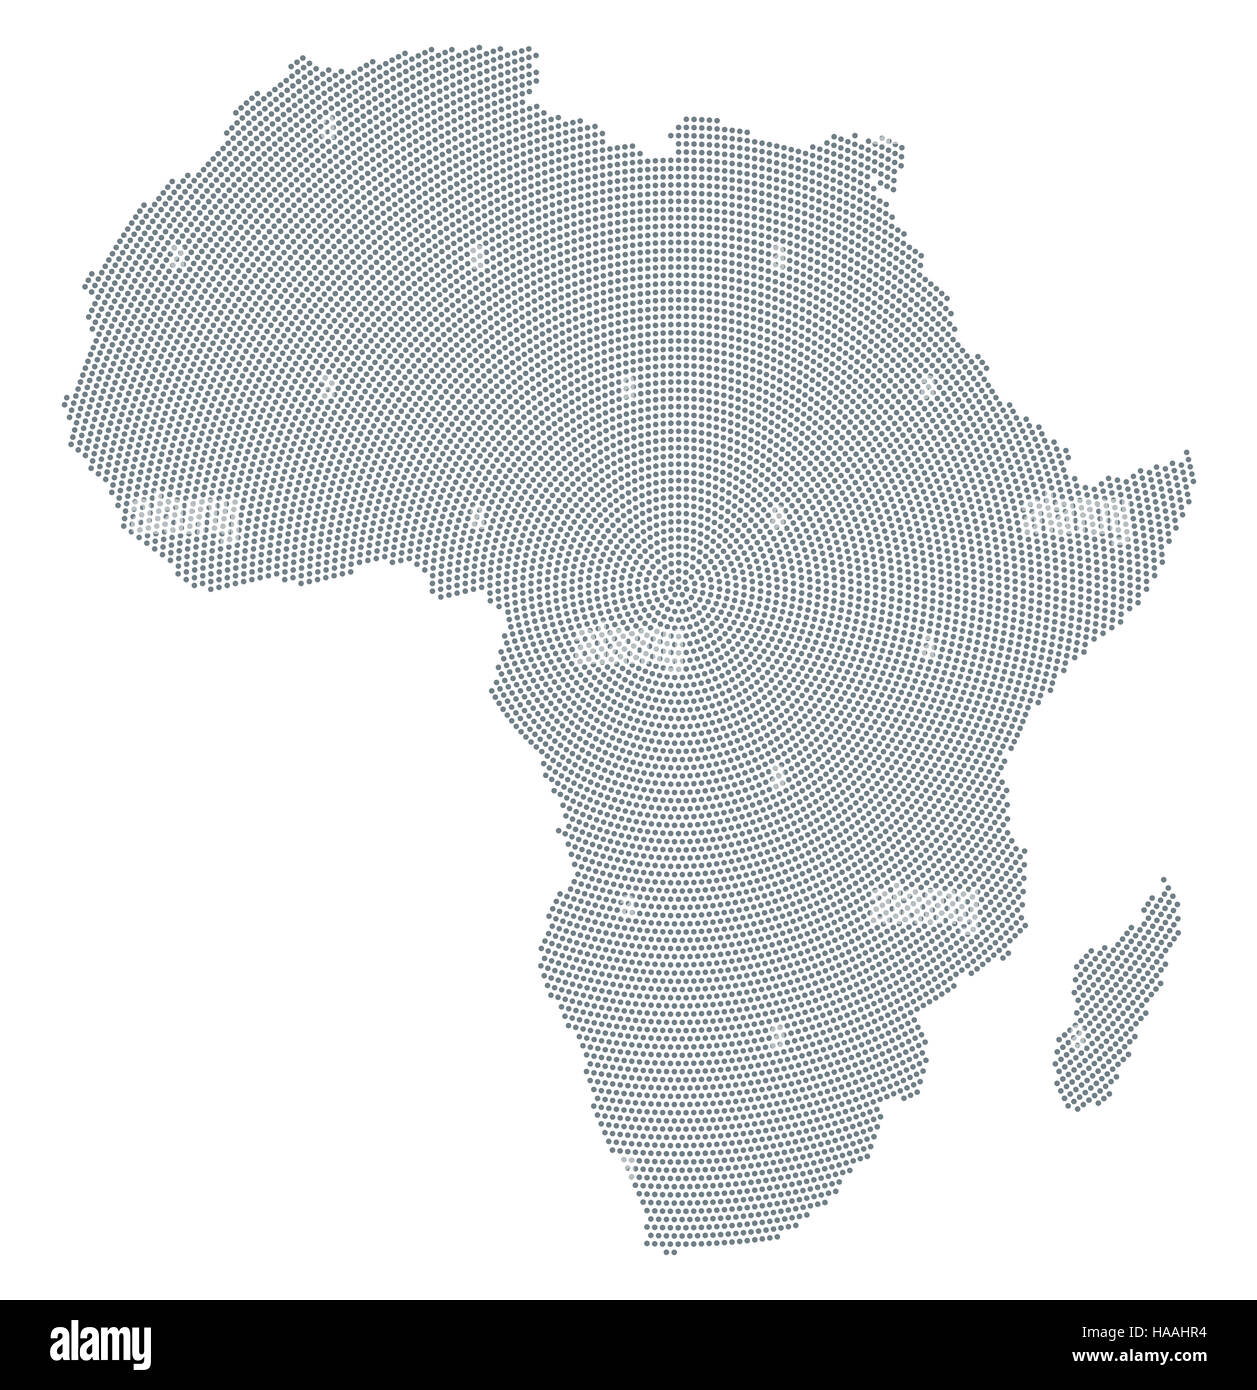 Africa mappa radiale pattern a punti. Puntini grigi andando dal centro verso l'esterno formante la silhouette del continente africano. Foto Stock